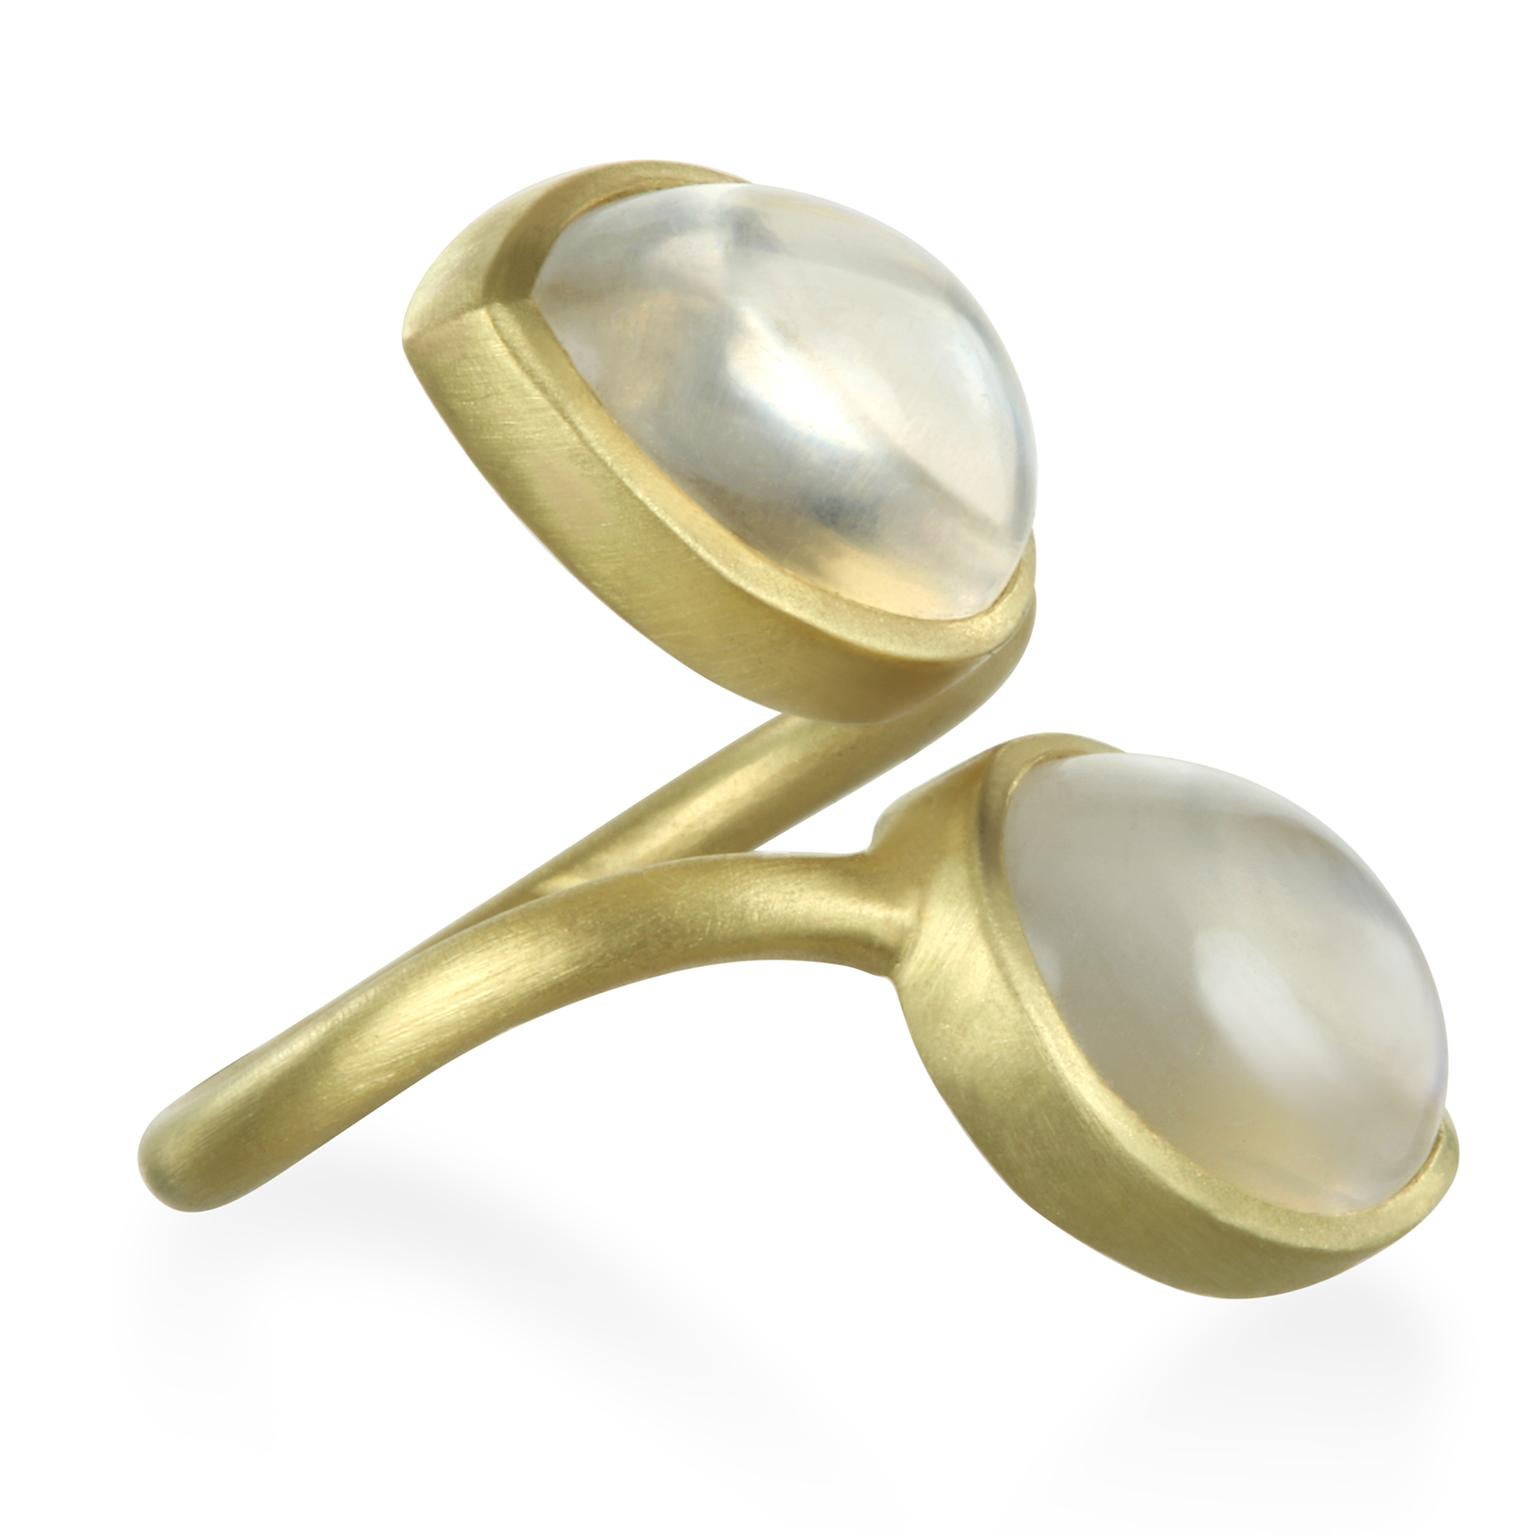 Diese kühne und schöne 18k Gold Double Pear Shape Moonstone Lünette Ring macht eine ziemlich Aussage. Das matte Gold verstärkt den auffälligen Regenbogeneffekt des Mondsteins. Die Form und der Schliff der aufeinander abgestimmten, leuchtenden